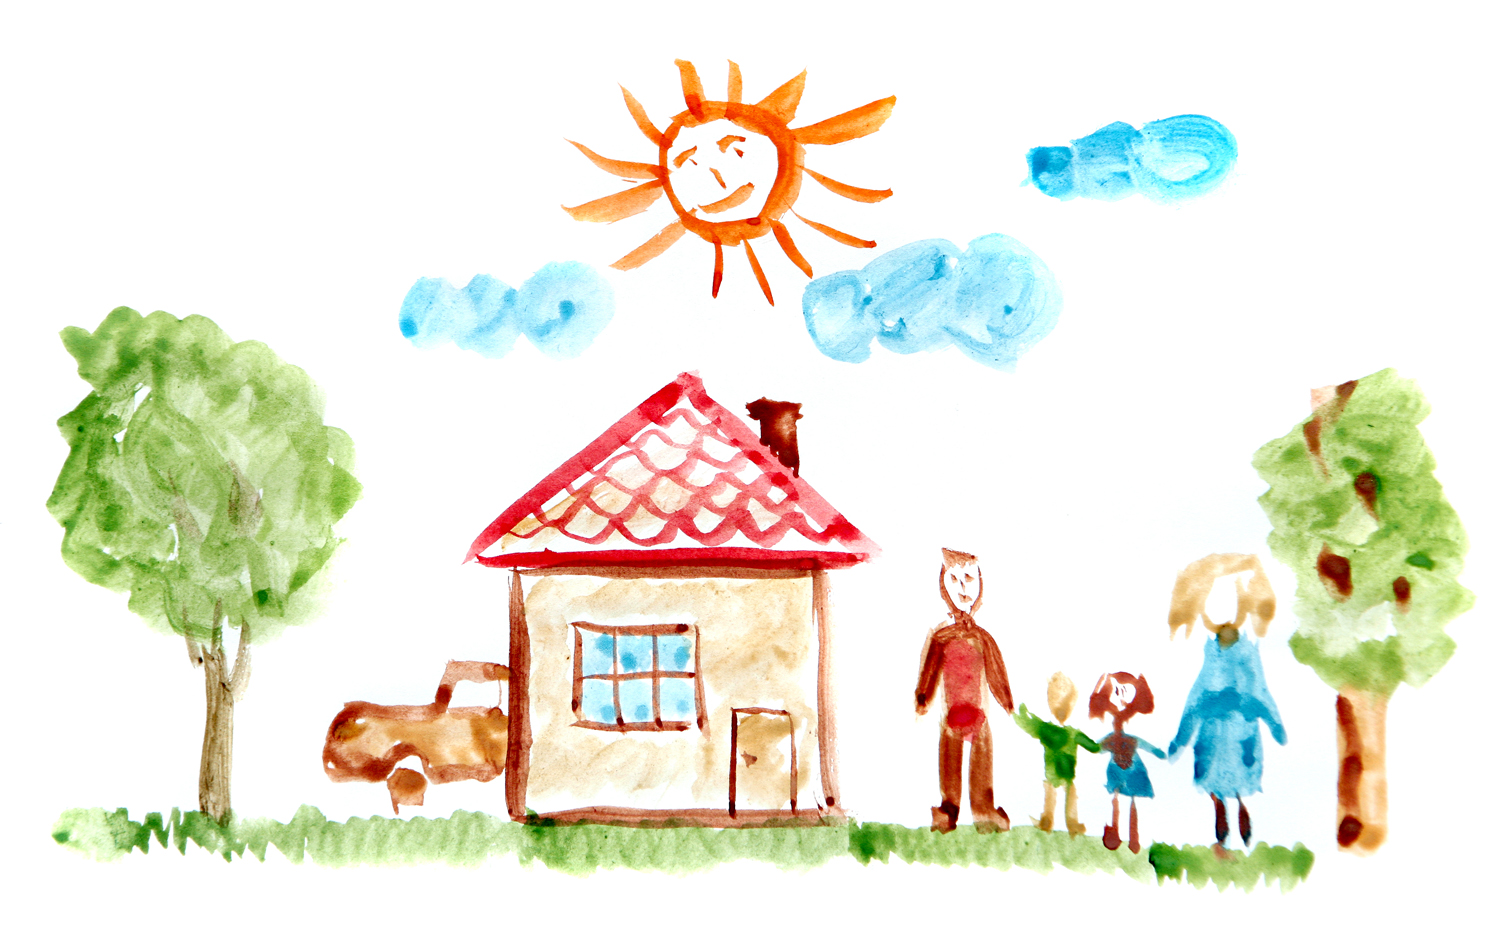 Нарисовать будущую семью дом и домашнее хозяйство. "Дом.дерево.человек""дом.дерево.человек". Детские рисунки. Домик детский рисунок. Семья рисунок.